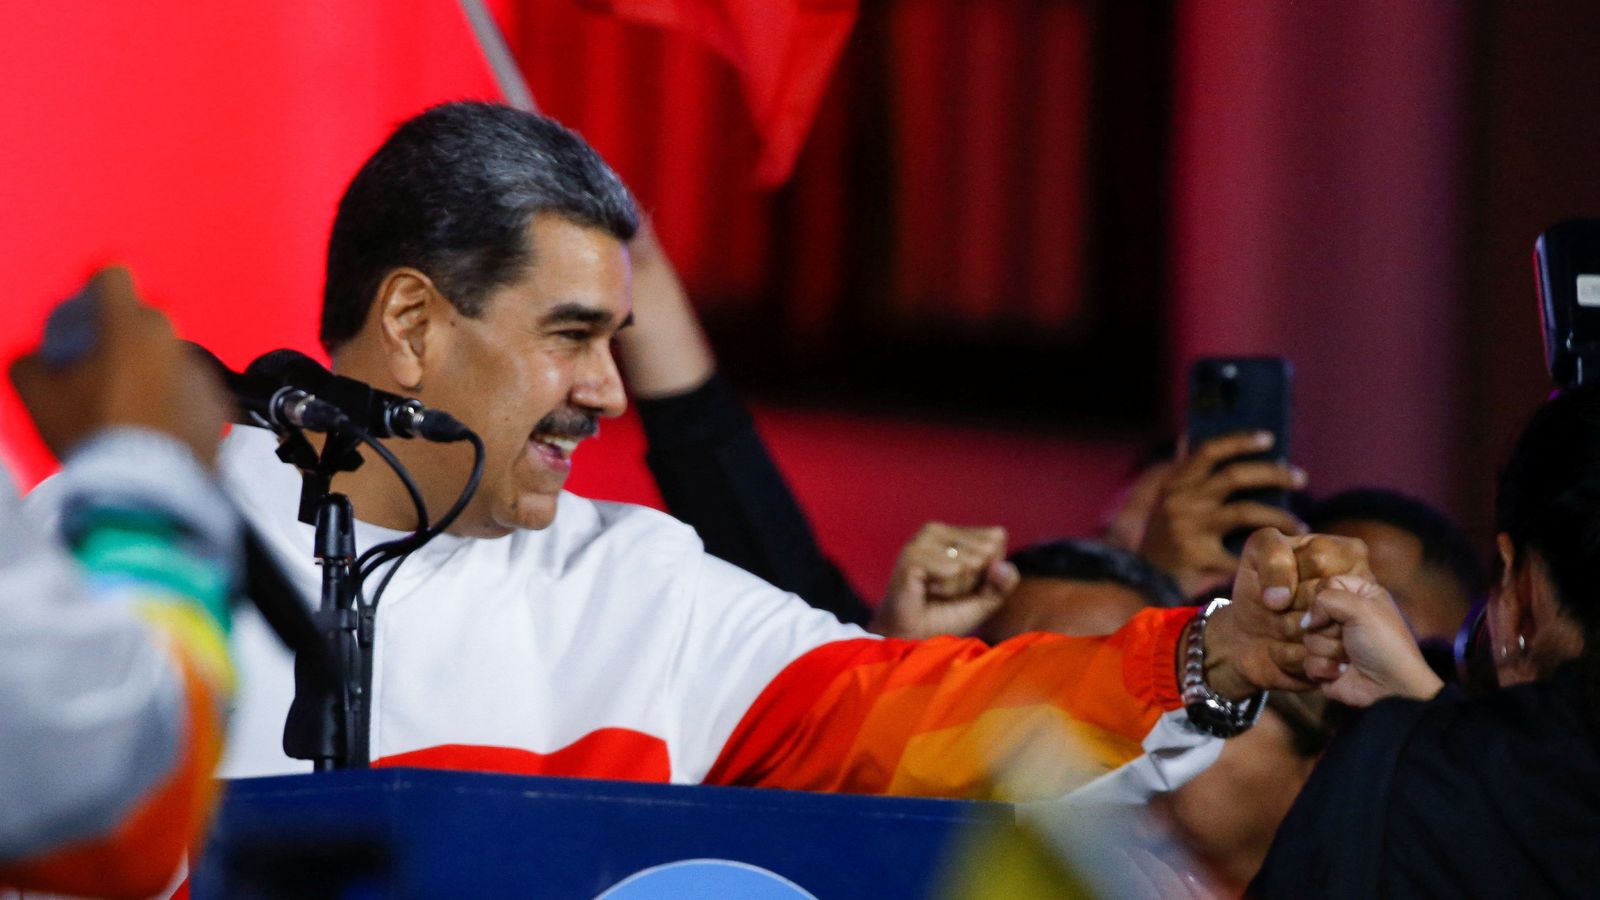 САЩ предлагат на Гвиана непоколебима подкрепа в спора с Венецуела за богатата на петрол територия Есекибо